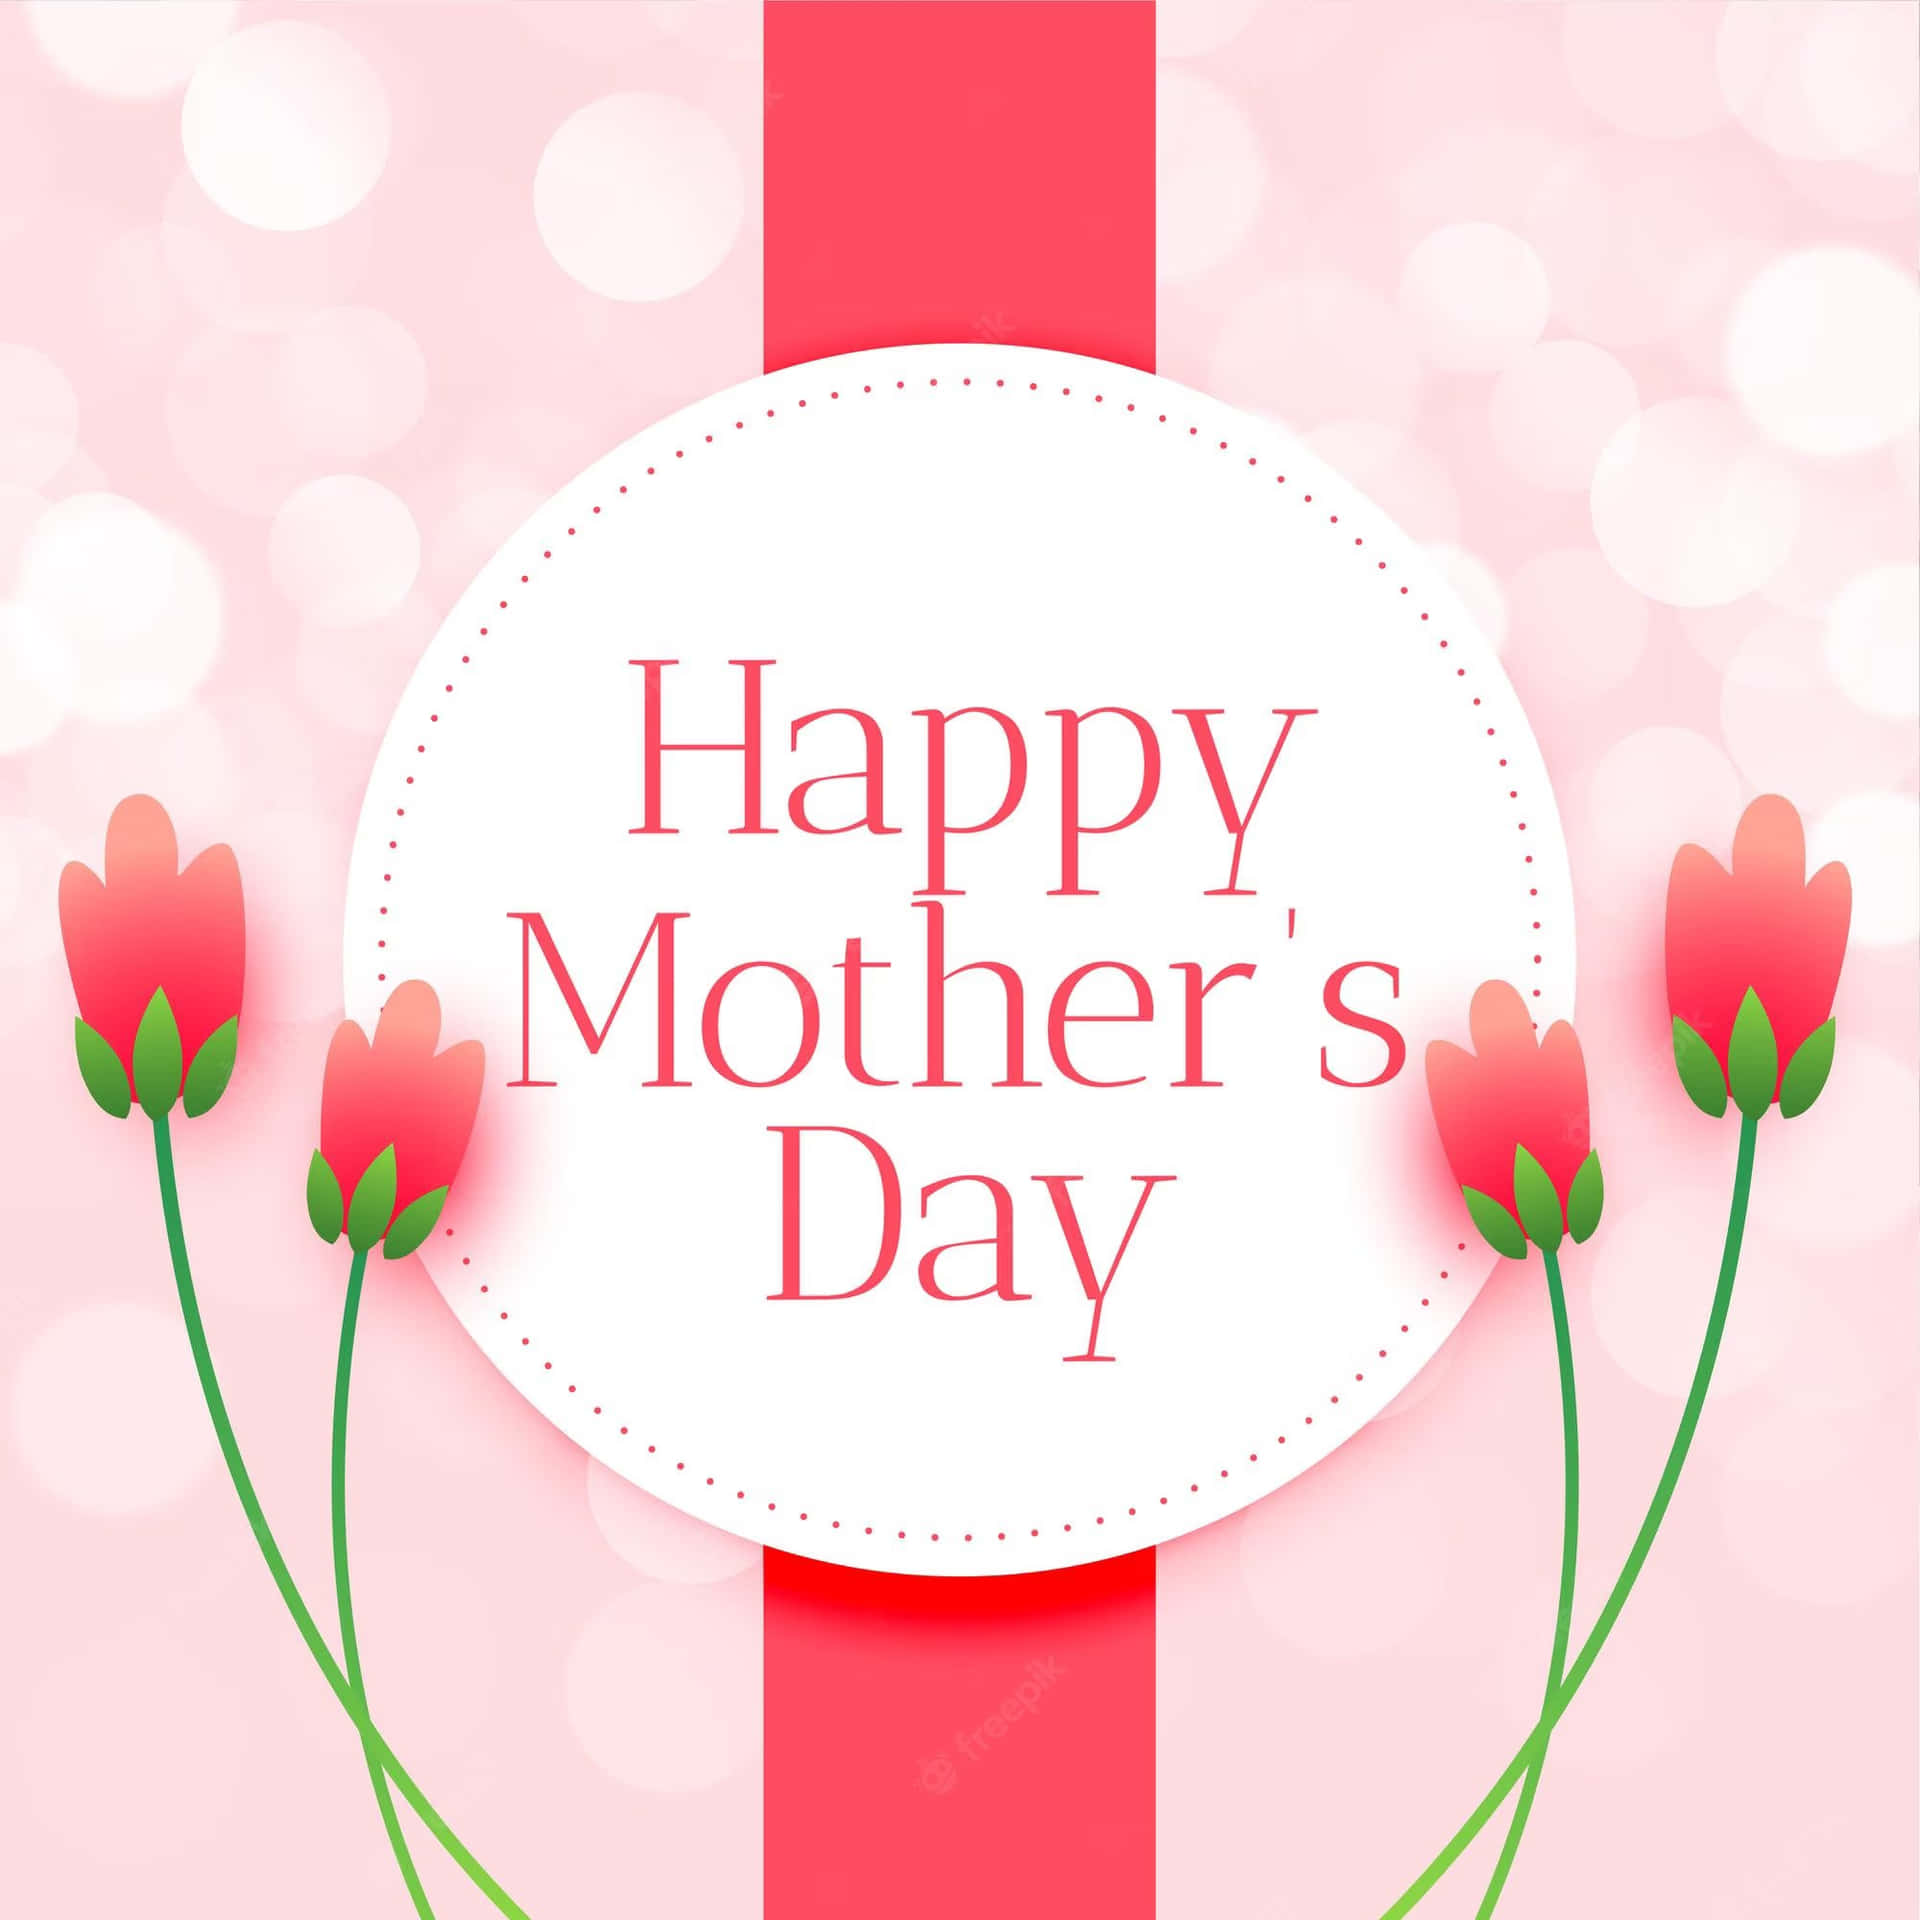 ¡deseandoa Todas Las Madres Un Feliz Día De La Madre Lleno De Felicidad!